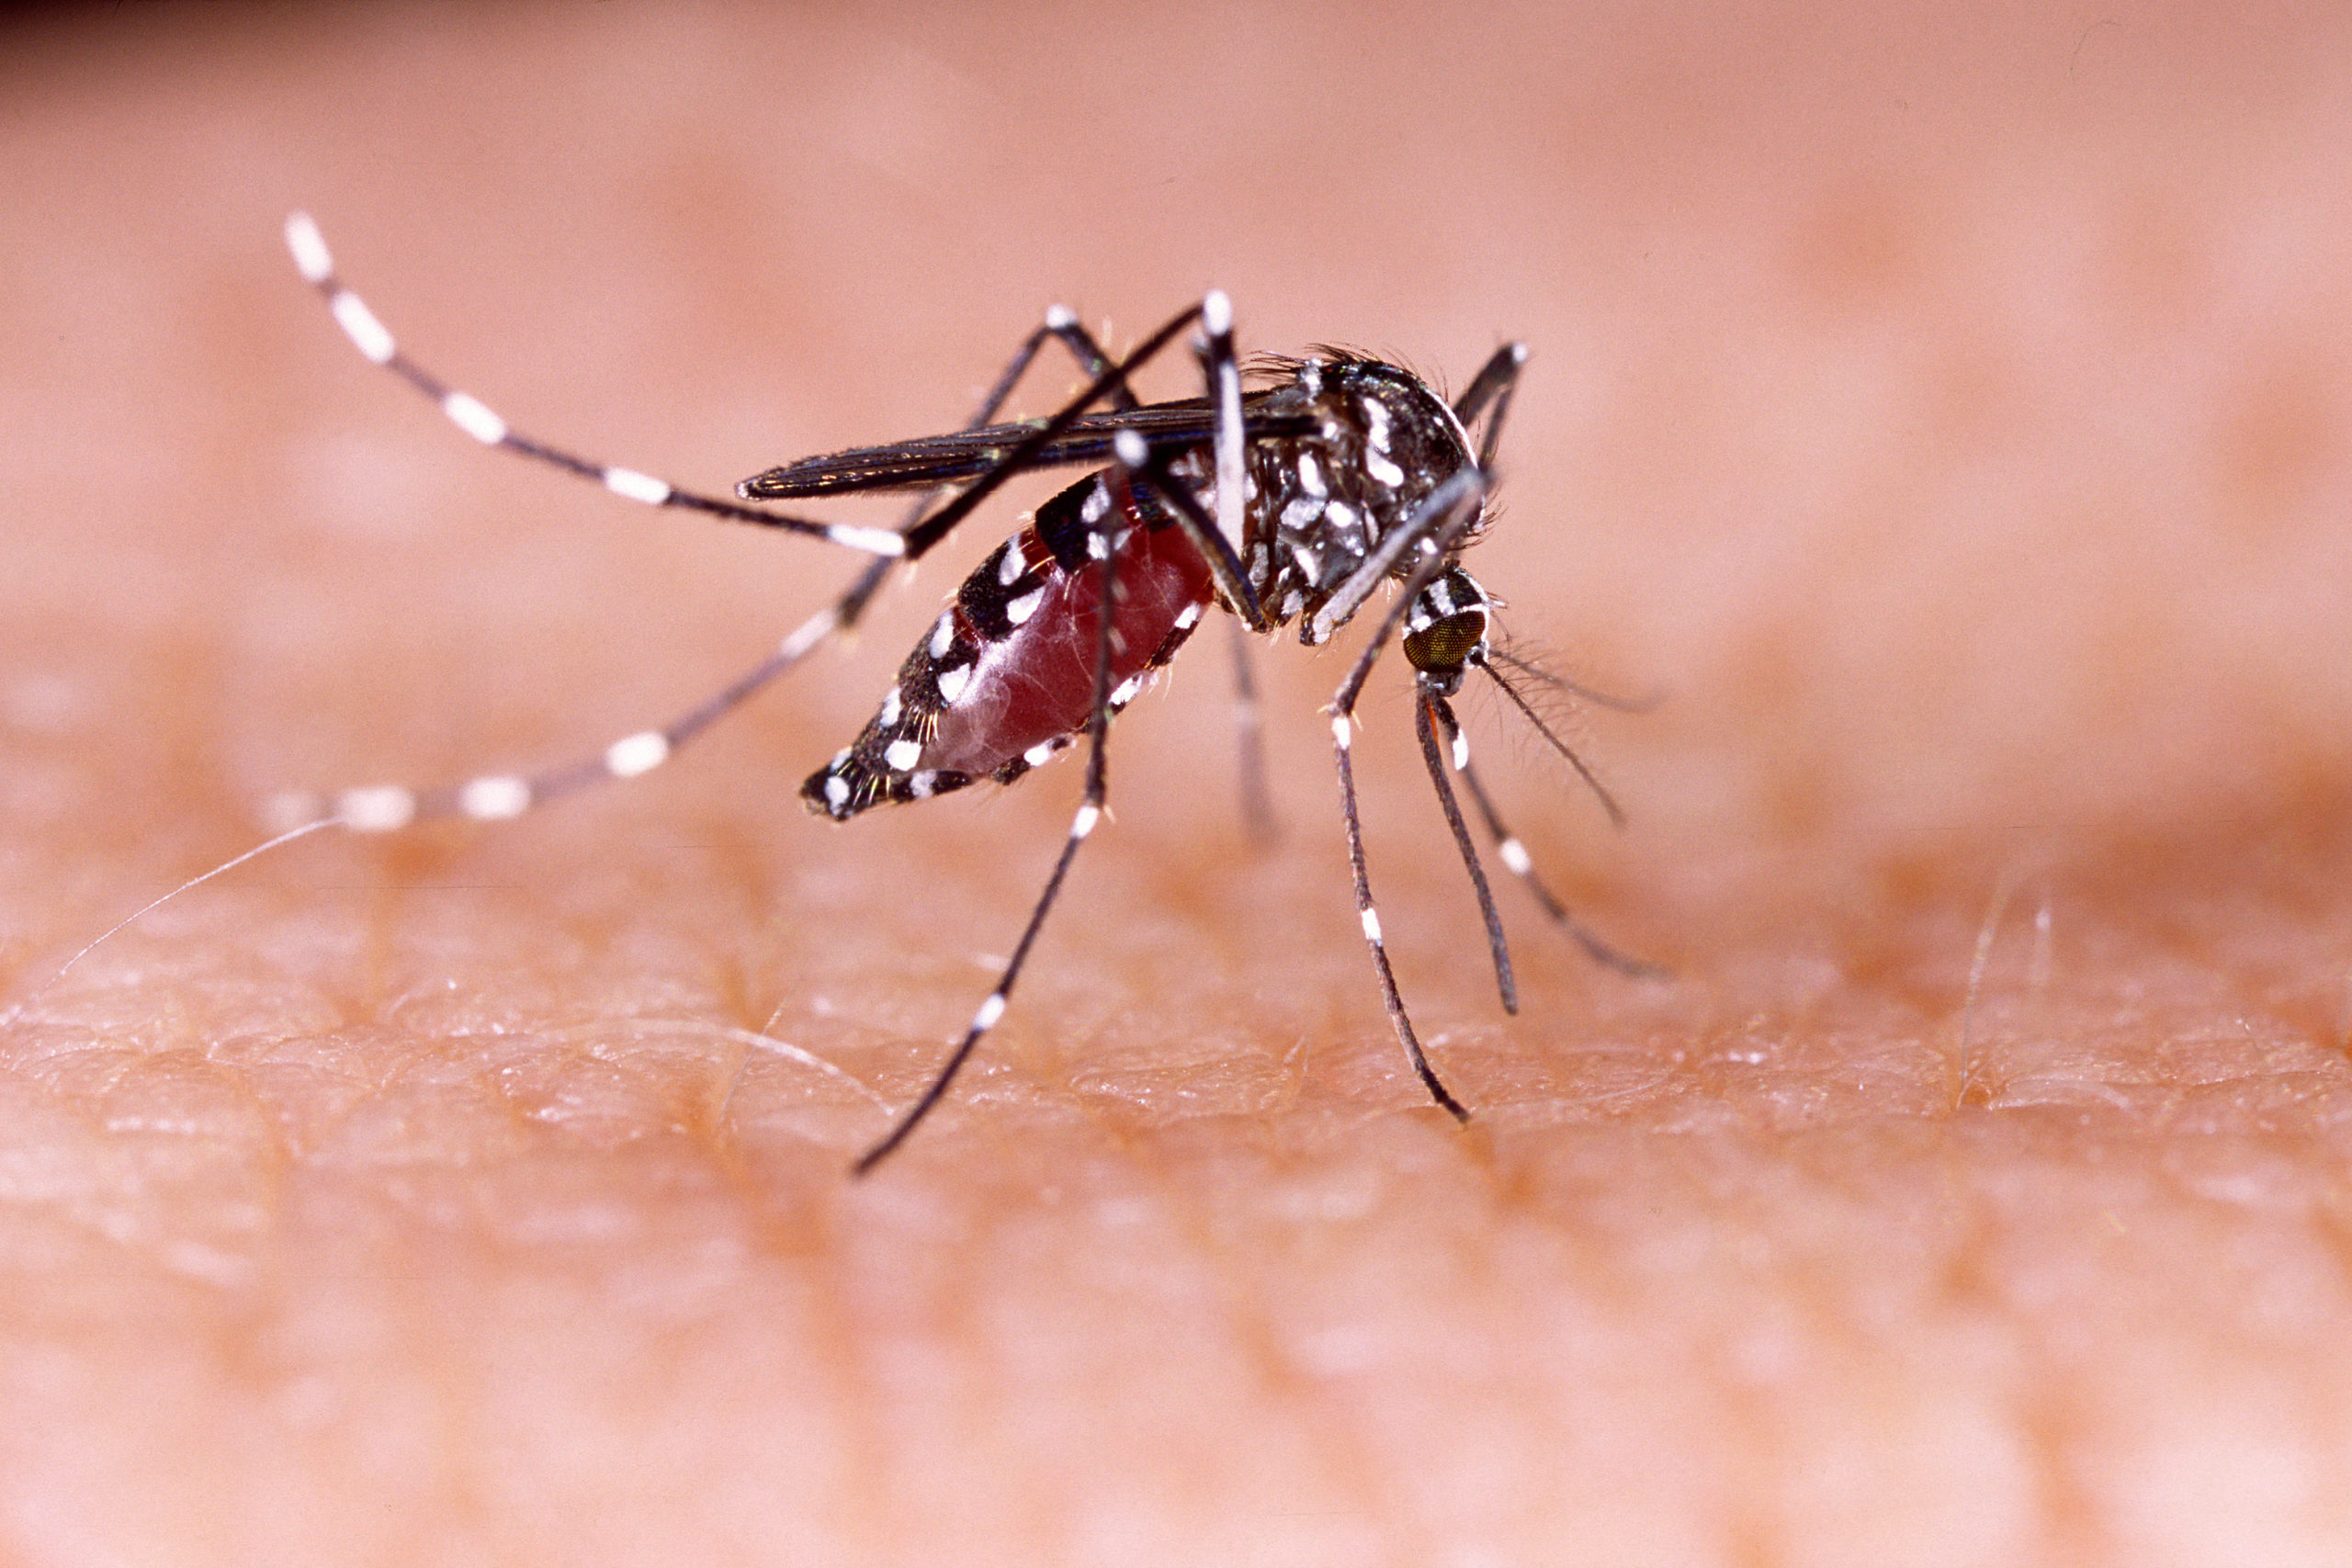 Maladies transmises par les moustiques